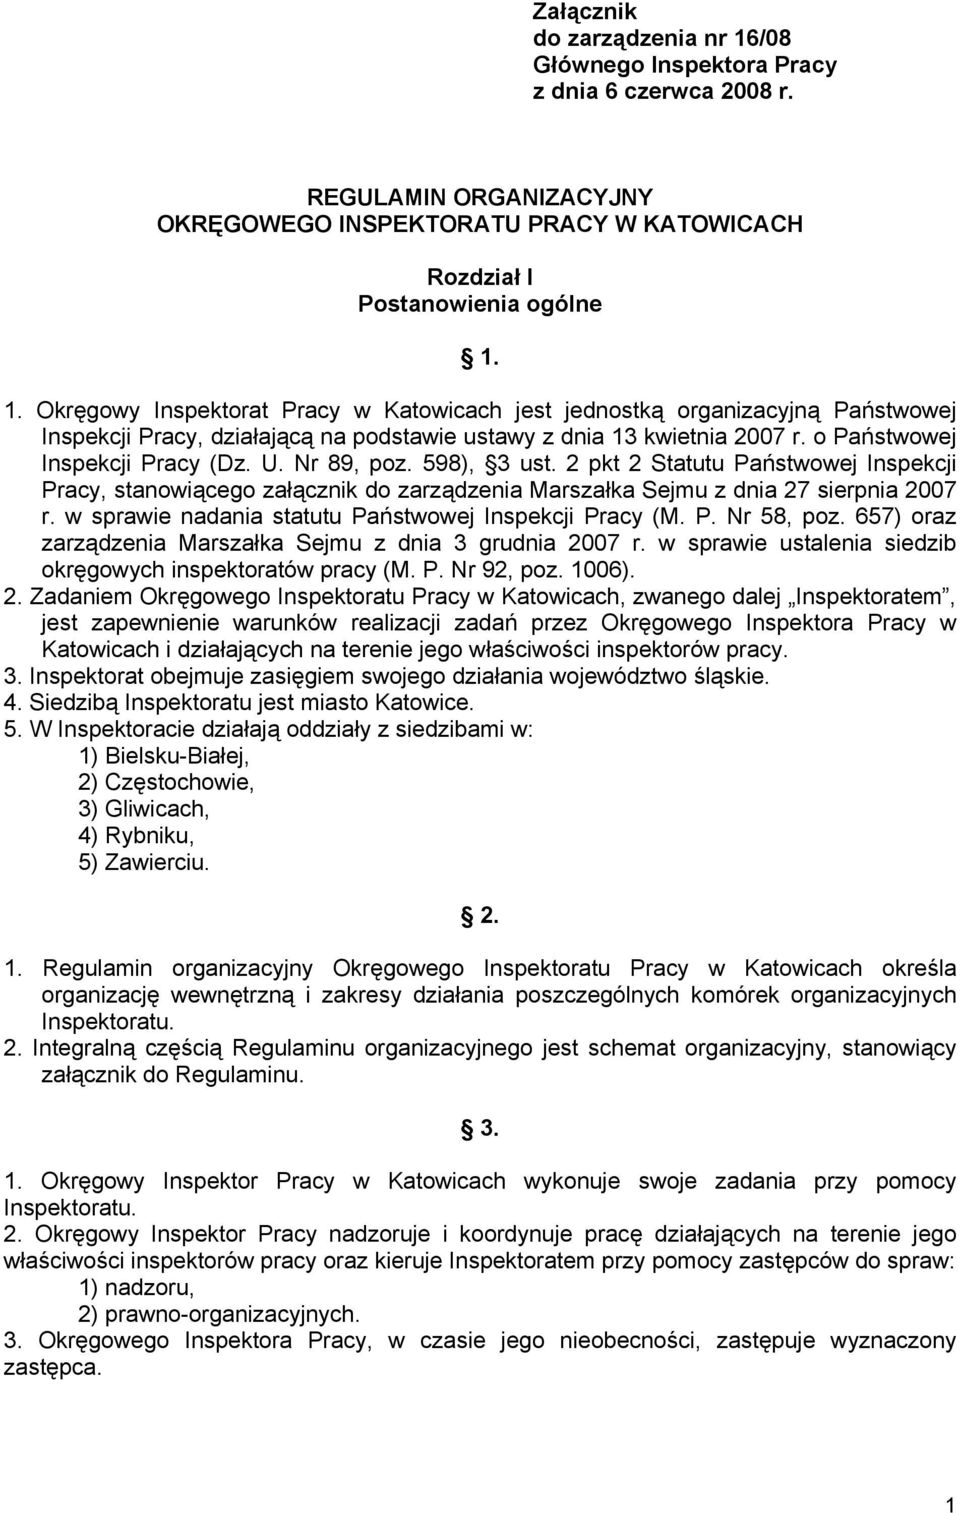 w sprawie nadania statutu Państwowej Inspekcji Pracy (M. P. Nr 58, poz. 657) oraz zarządzenia Marszałka Sejmu z dnia 3 grudnia 2007 r. w sprawie ustalenia siedzib okręgowych inspektoratów pracy (M. P. Nr 92, poz.